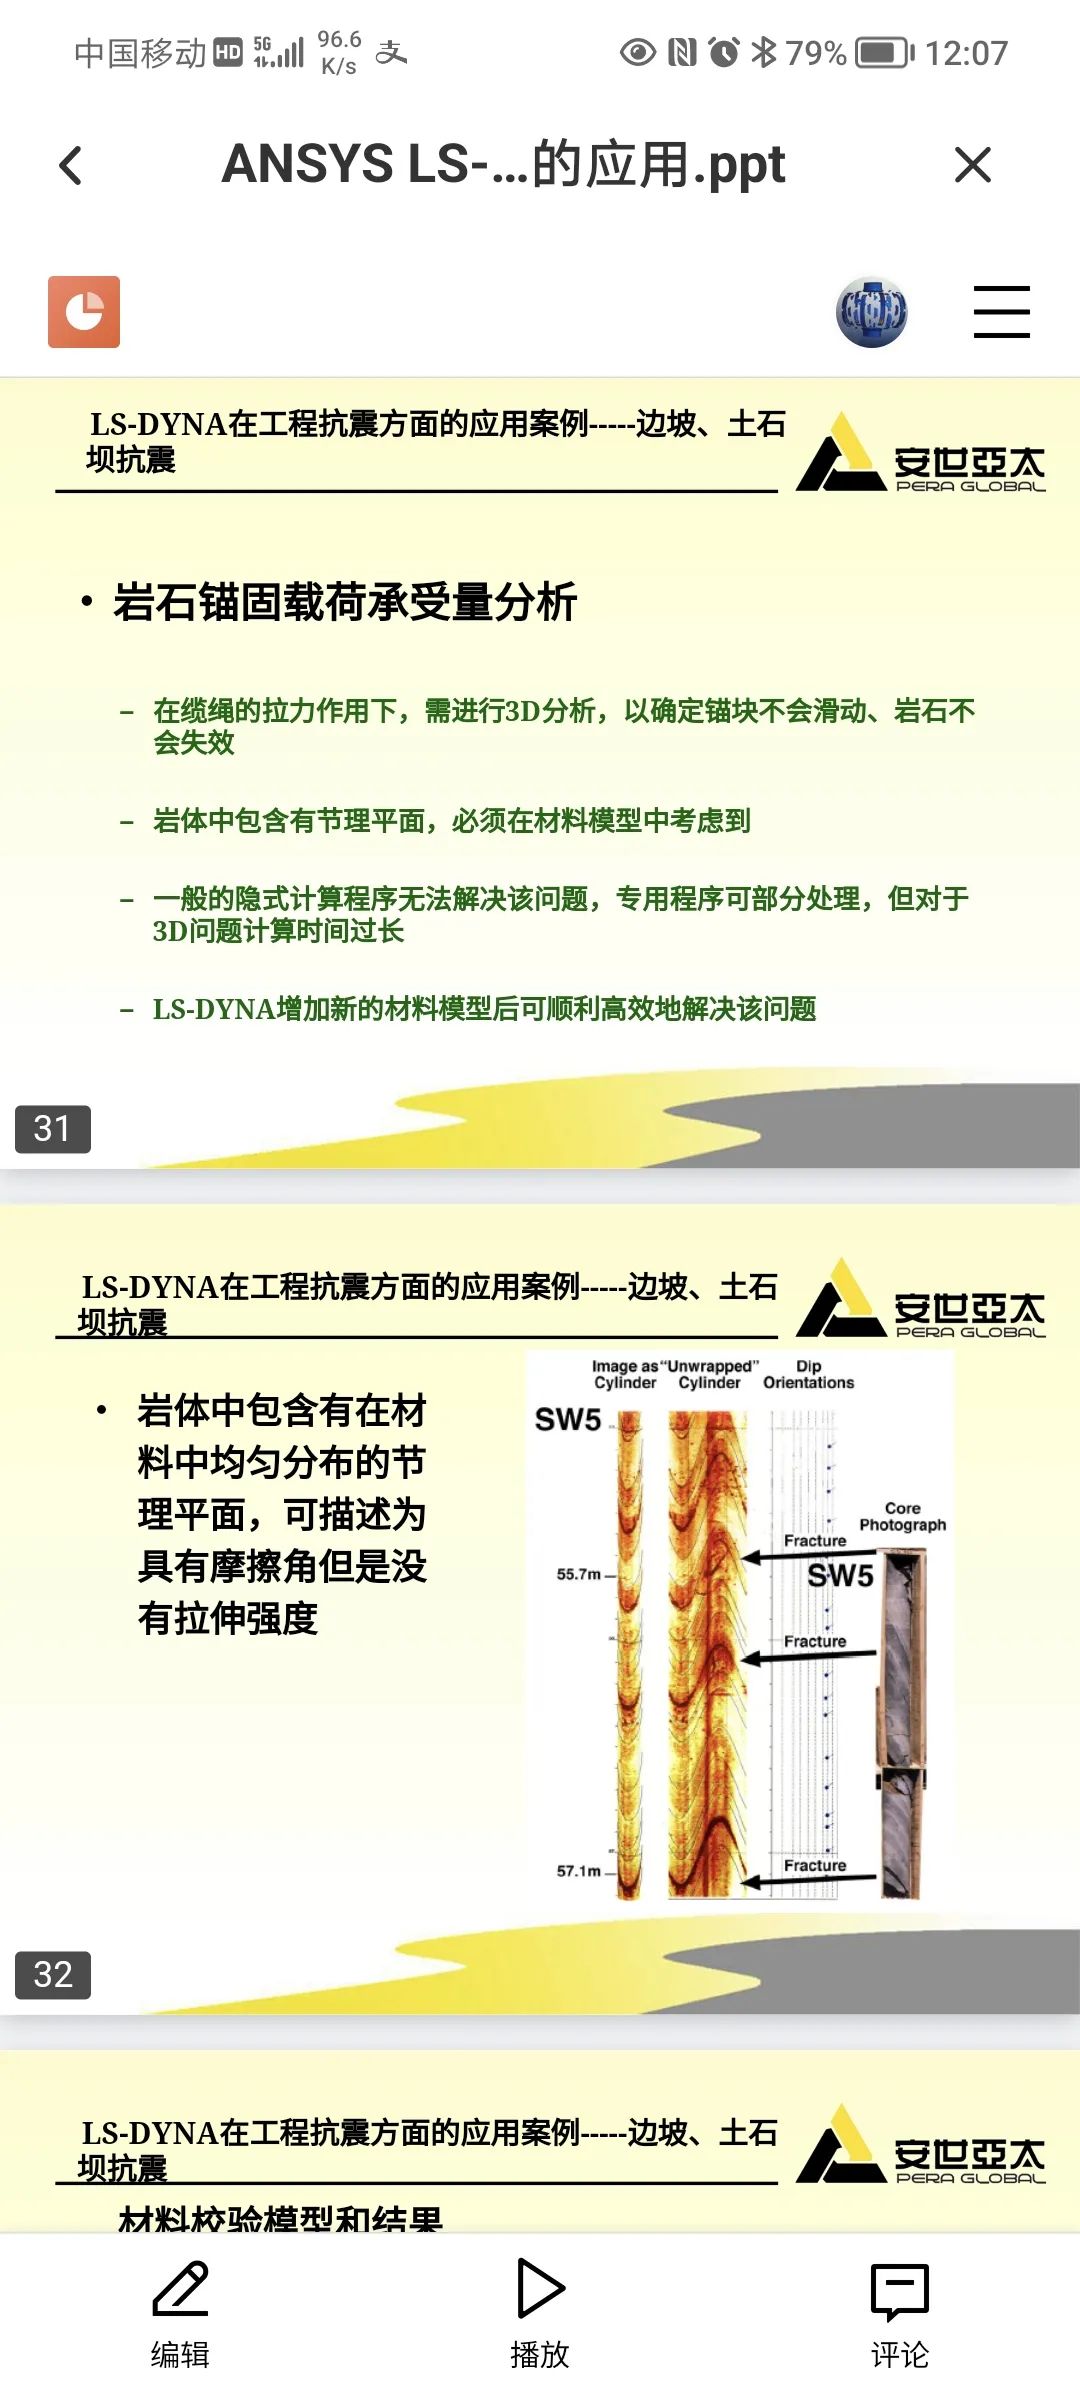 ANSYS LSDYNA在土木结构抗震中的应用的图16